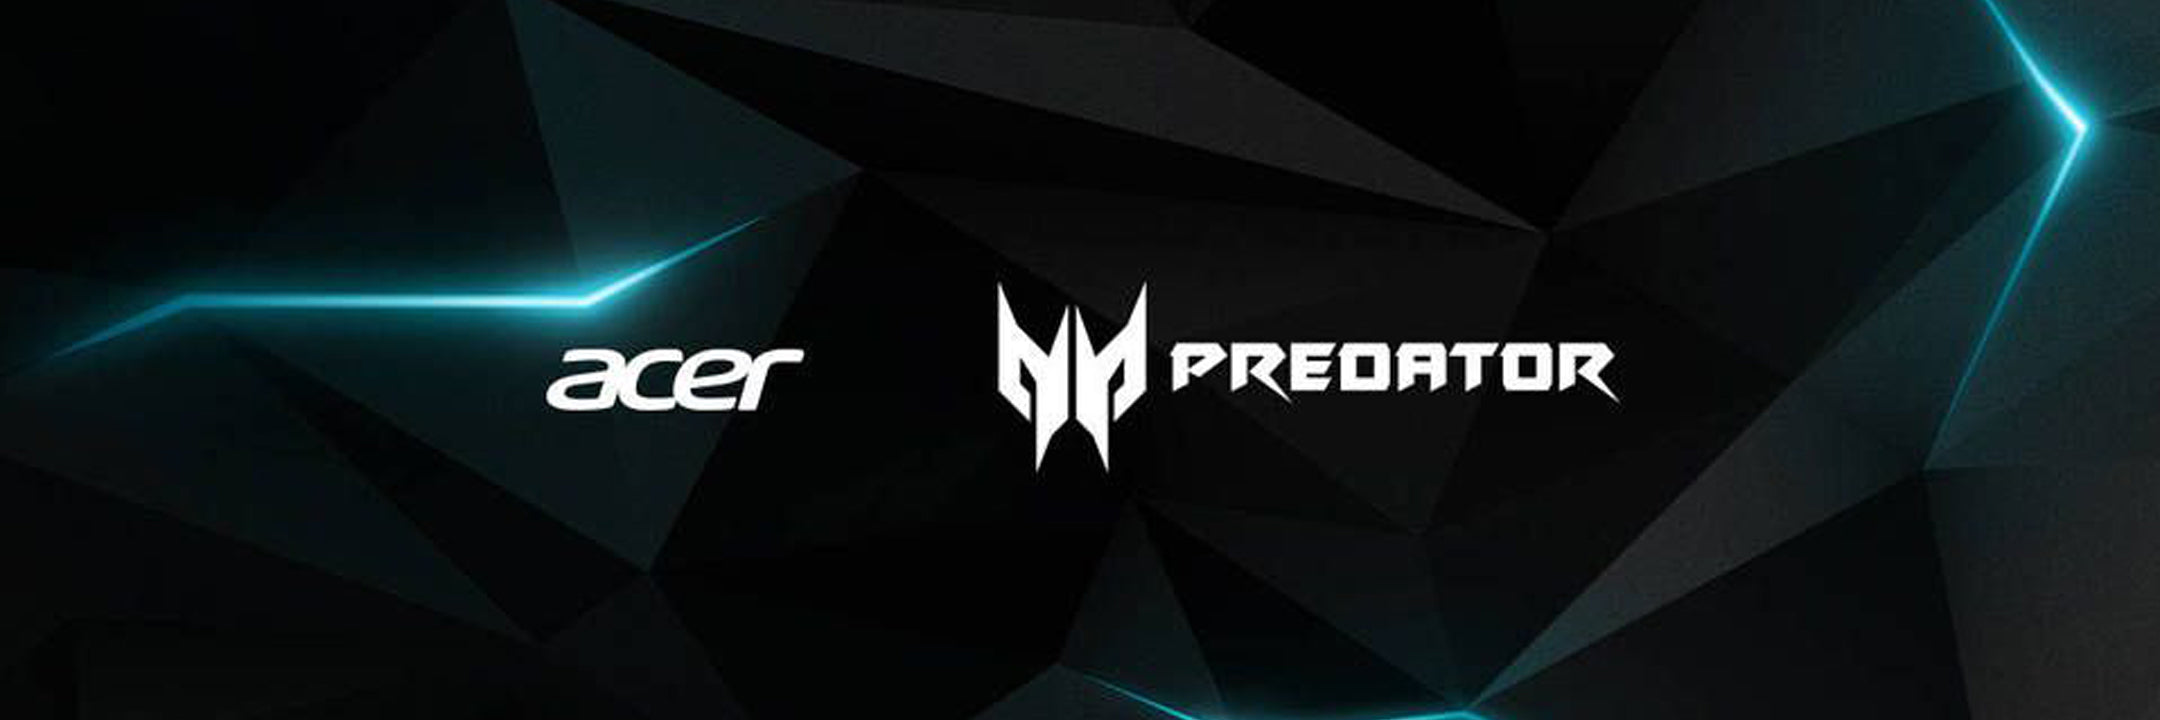 Acer Predator Gaming PC